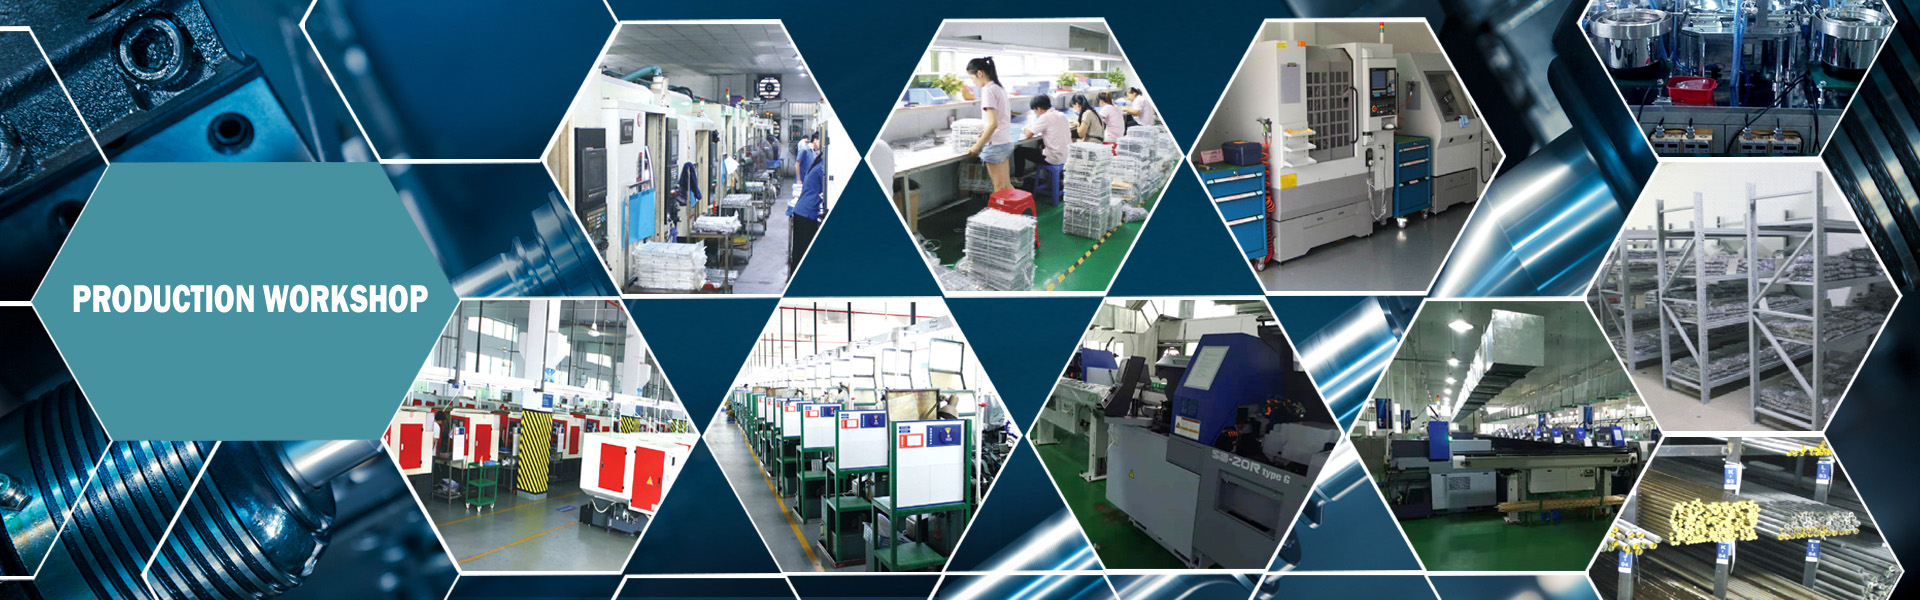 přesné hardware, lité odlévání, profilování,Dongguan Xililai Precision Hardware Co.,Ltd.